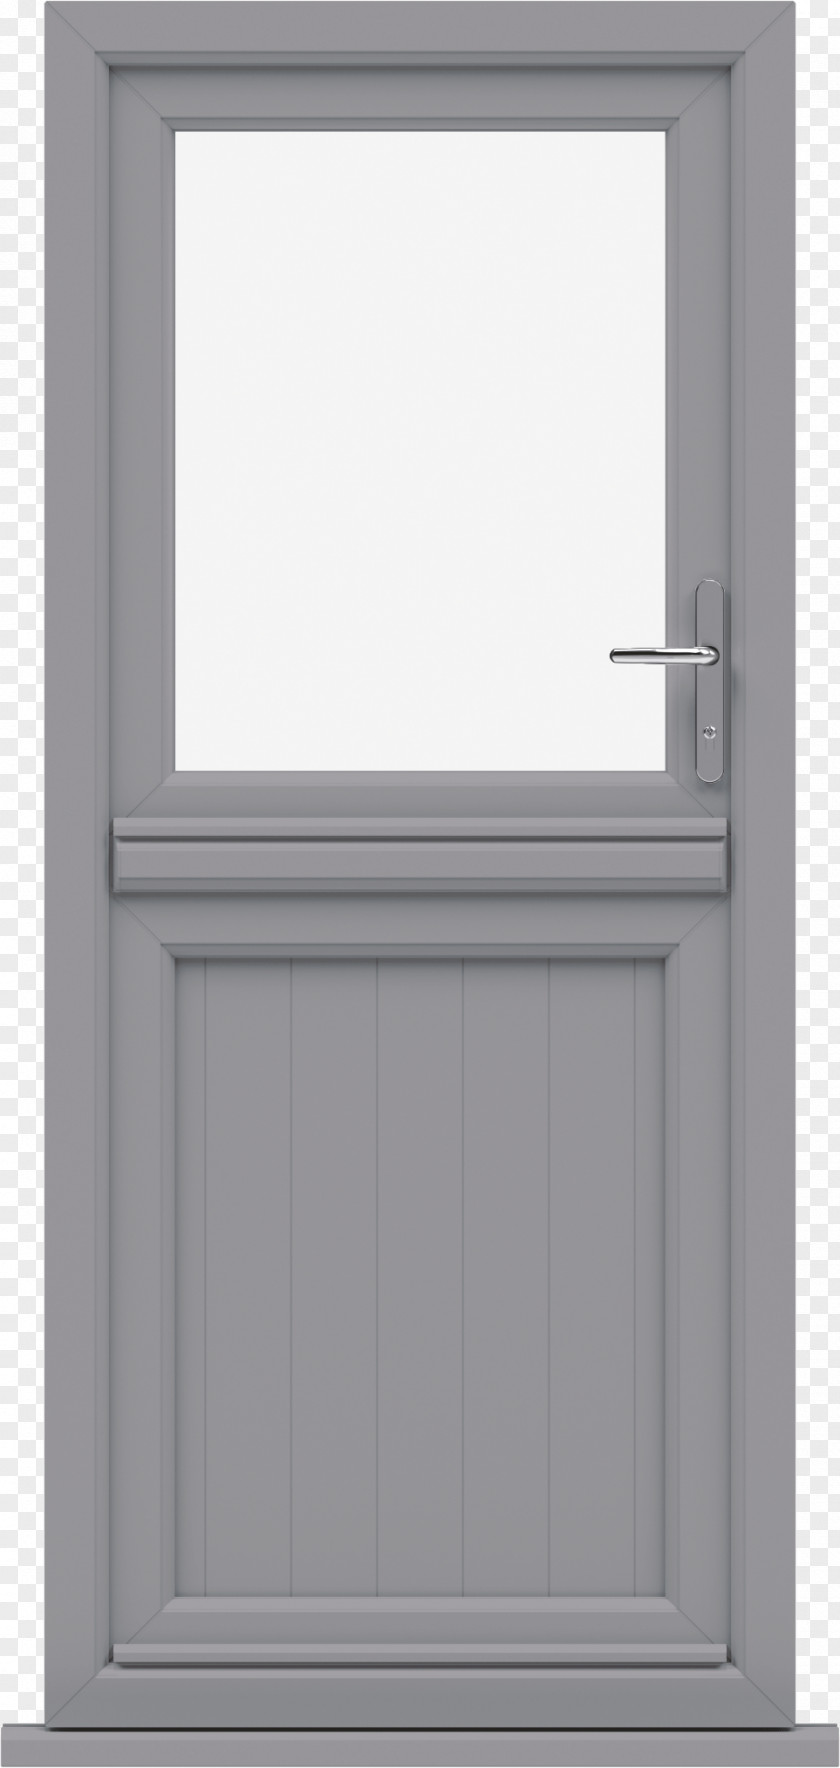 Window Sash Door Insulated Glazing PNG